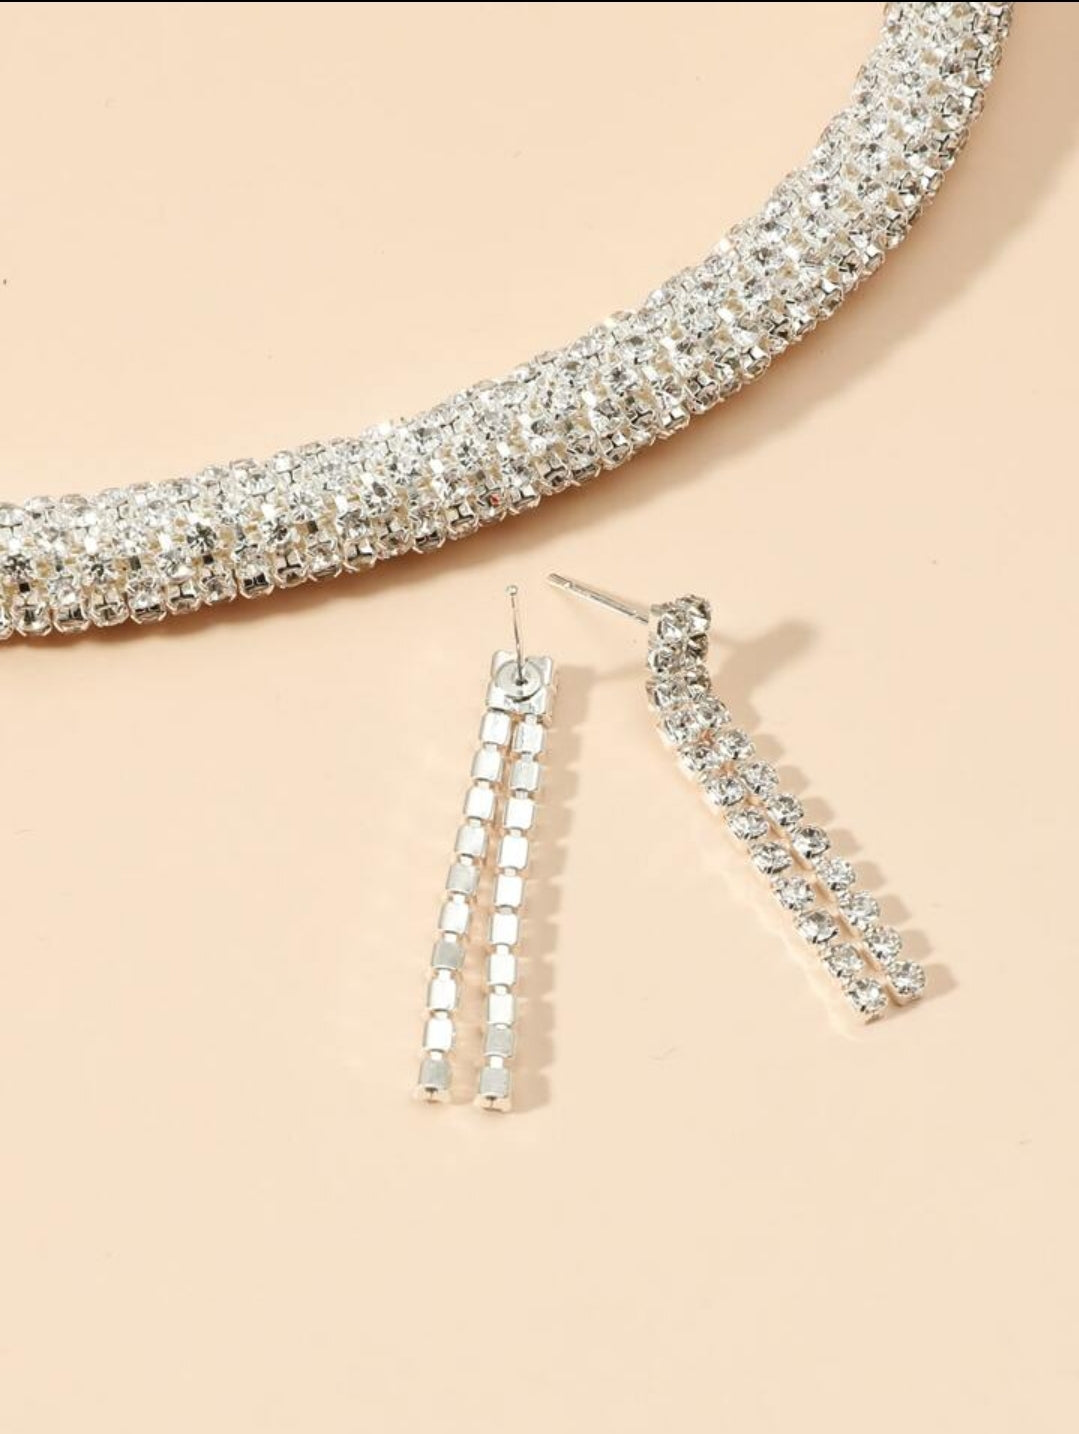 Crystal Encrusted Cord & Earrings Set